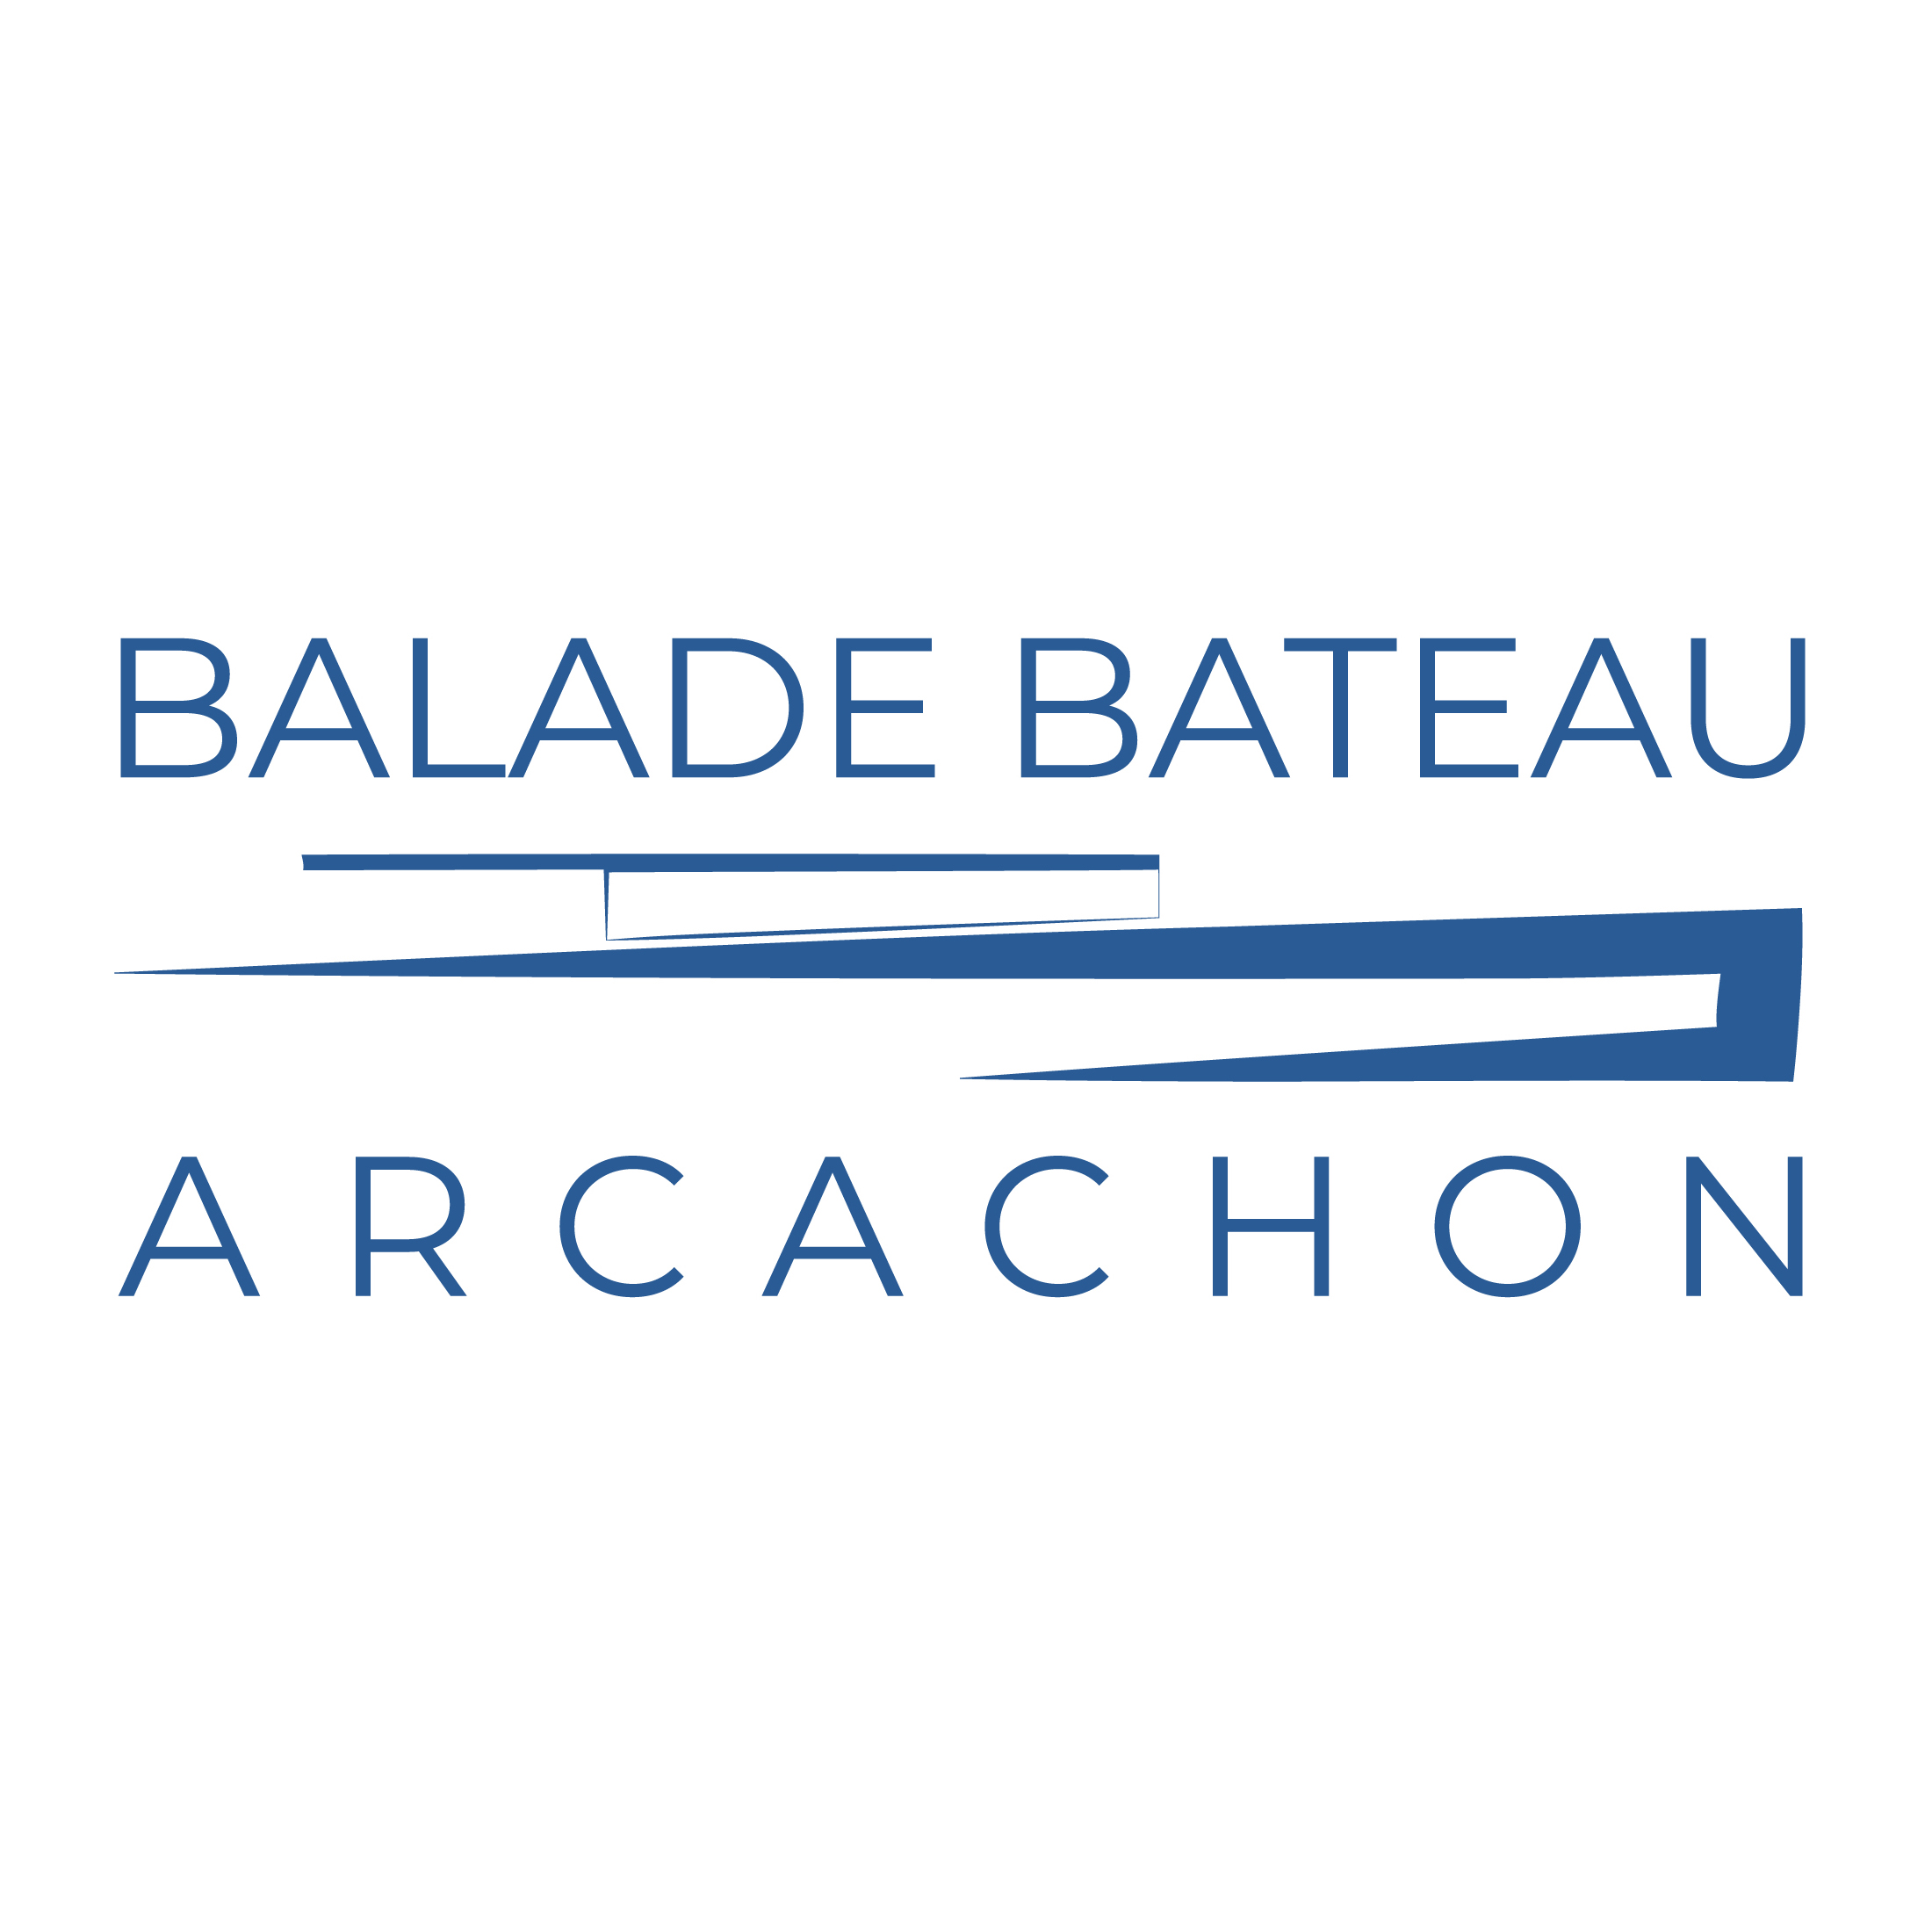 Balade Bateau Arcachon